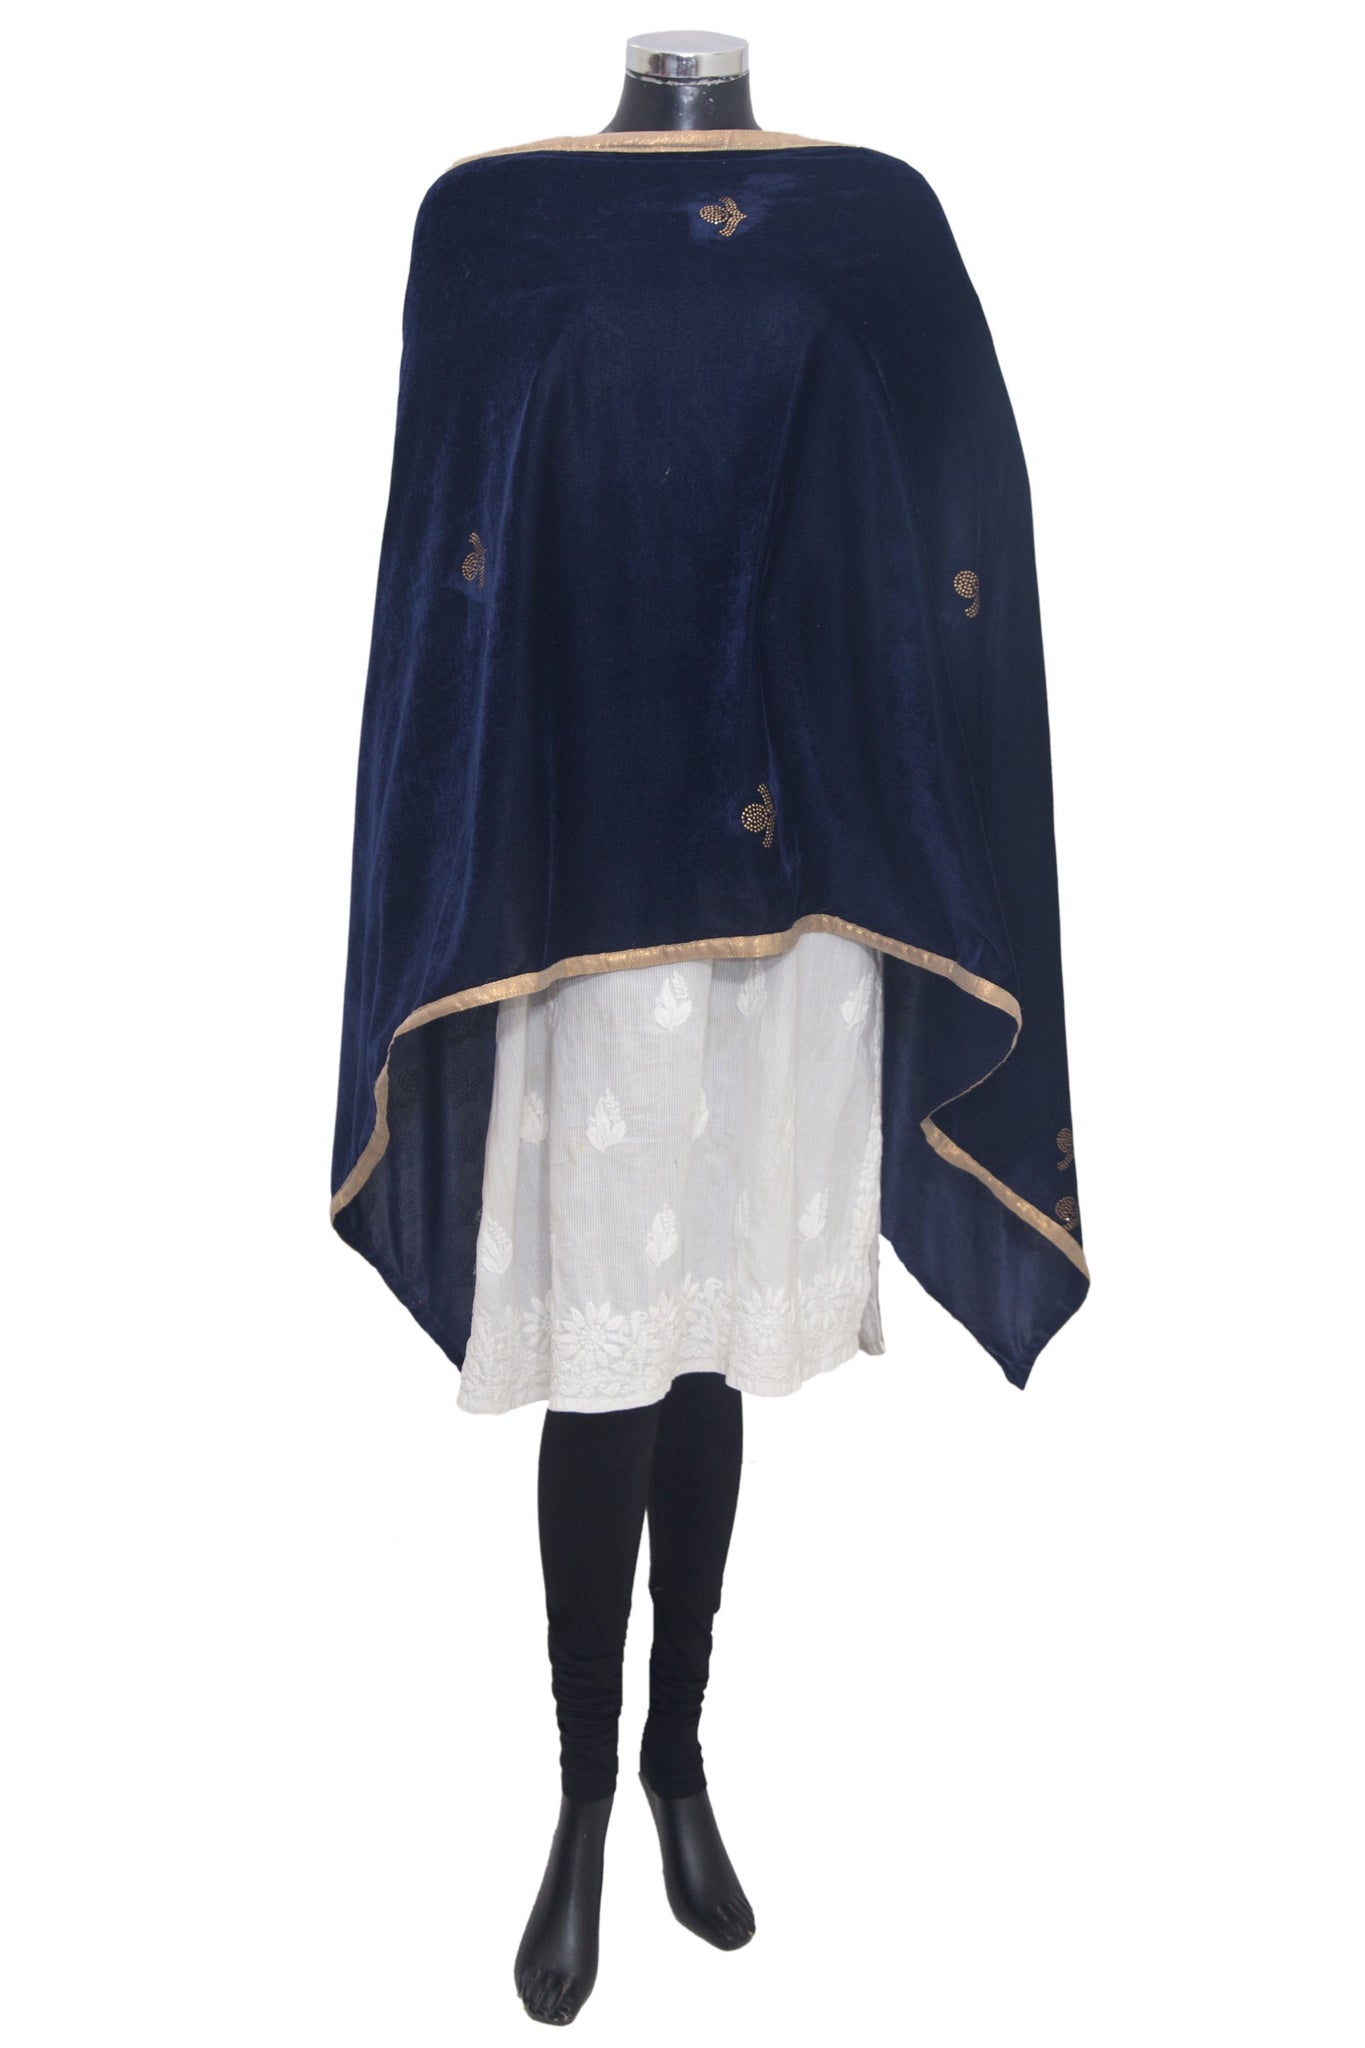 Velvet shawl #fdn1718-191